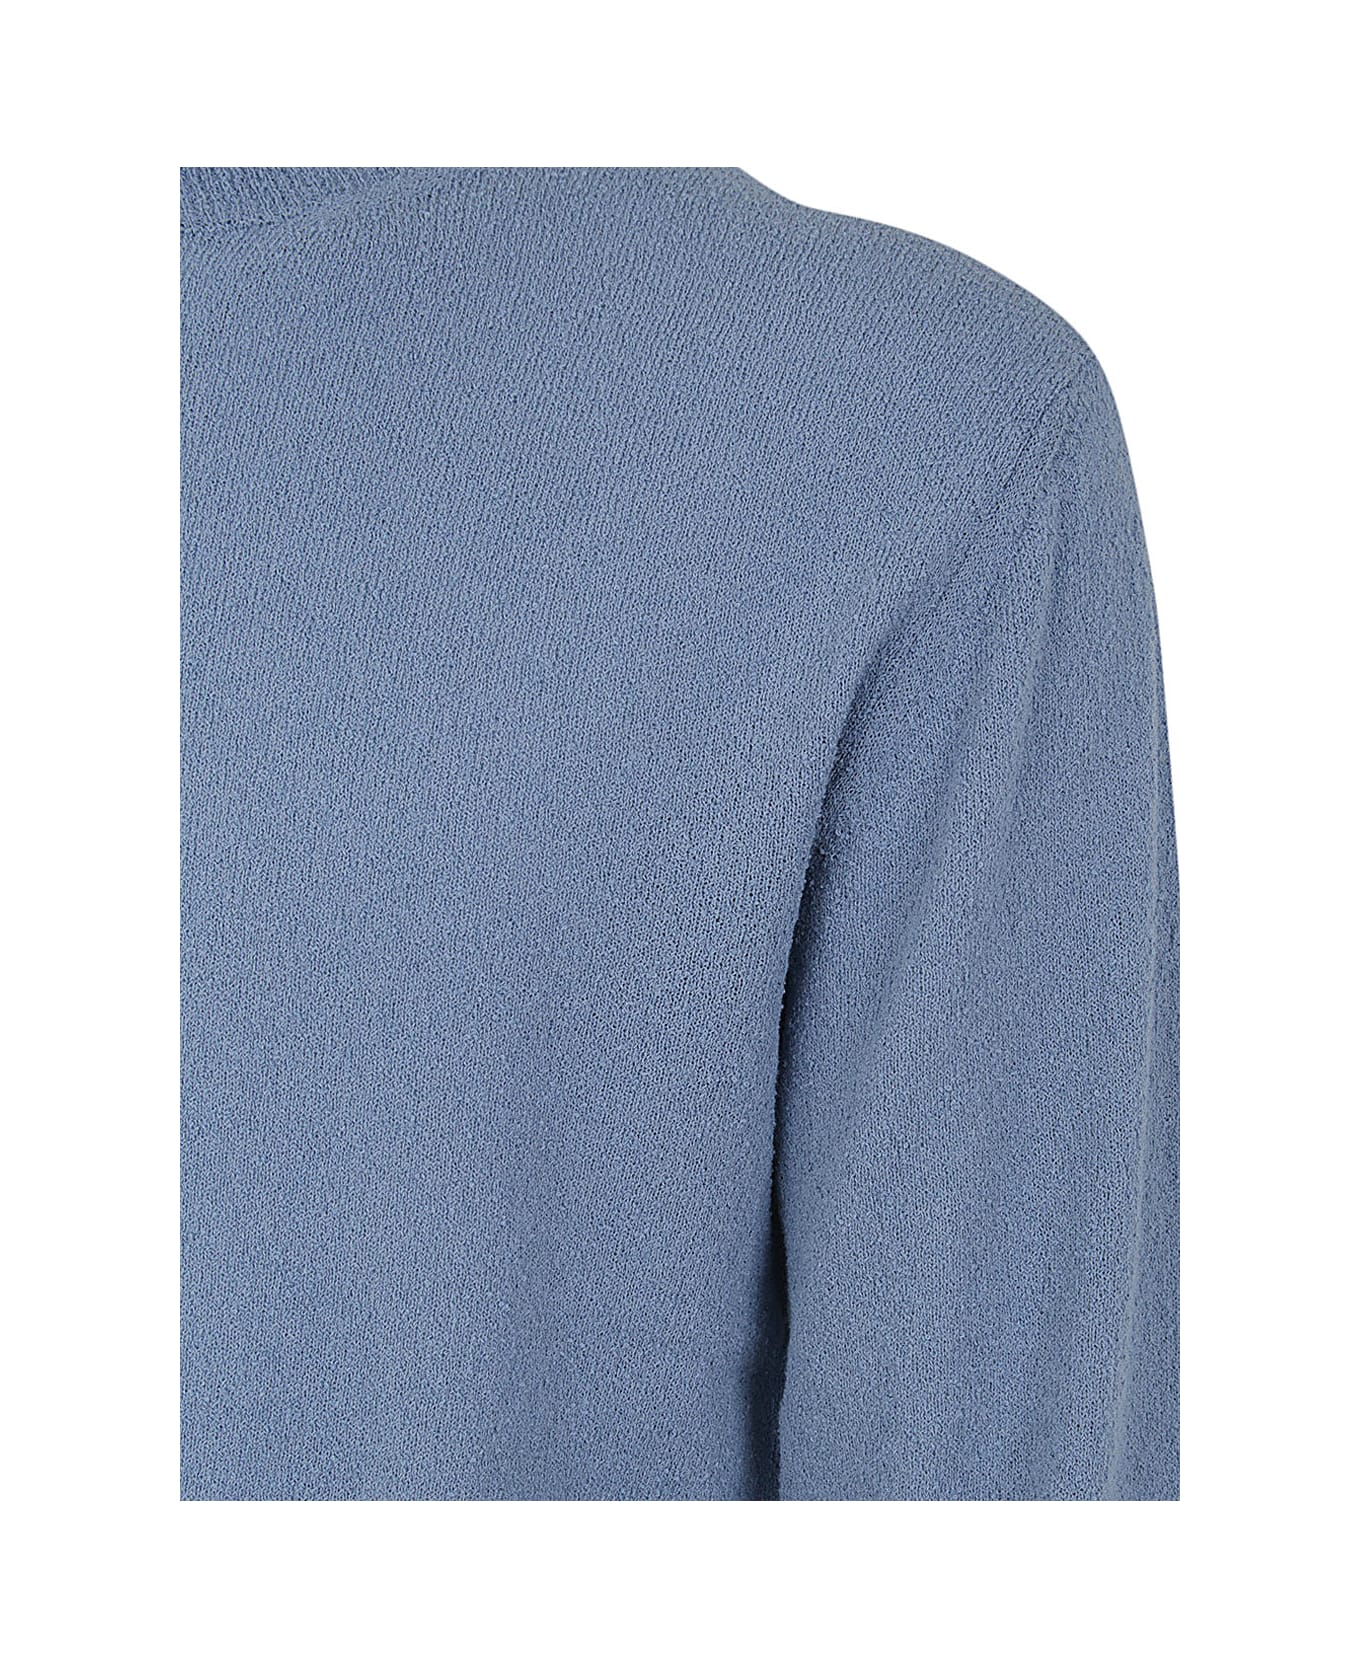 Drumohr Sweater - Light Blue ニットウェア